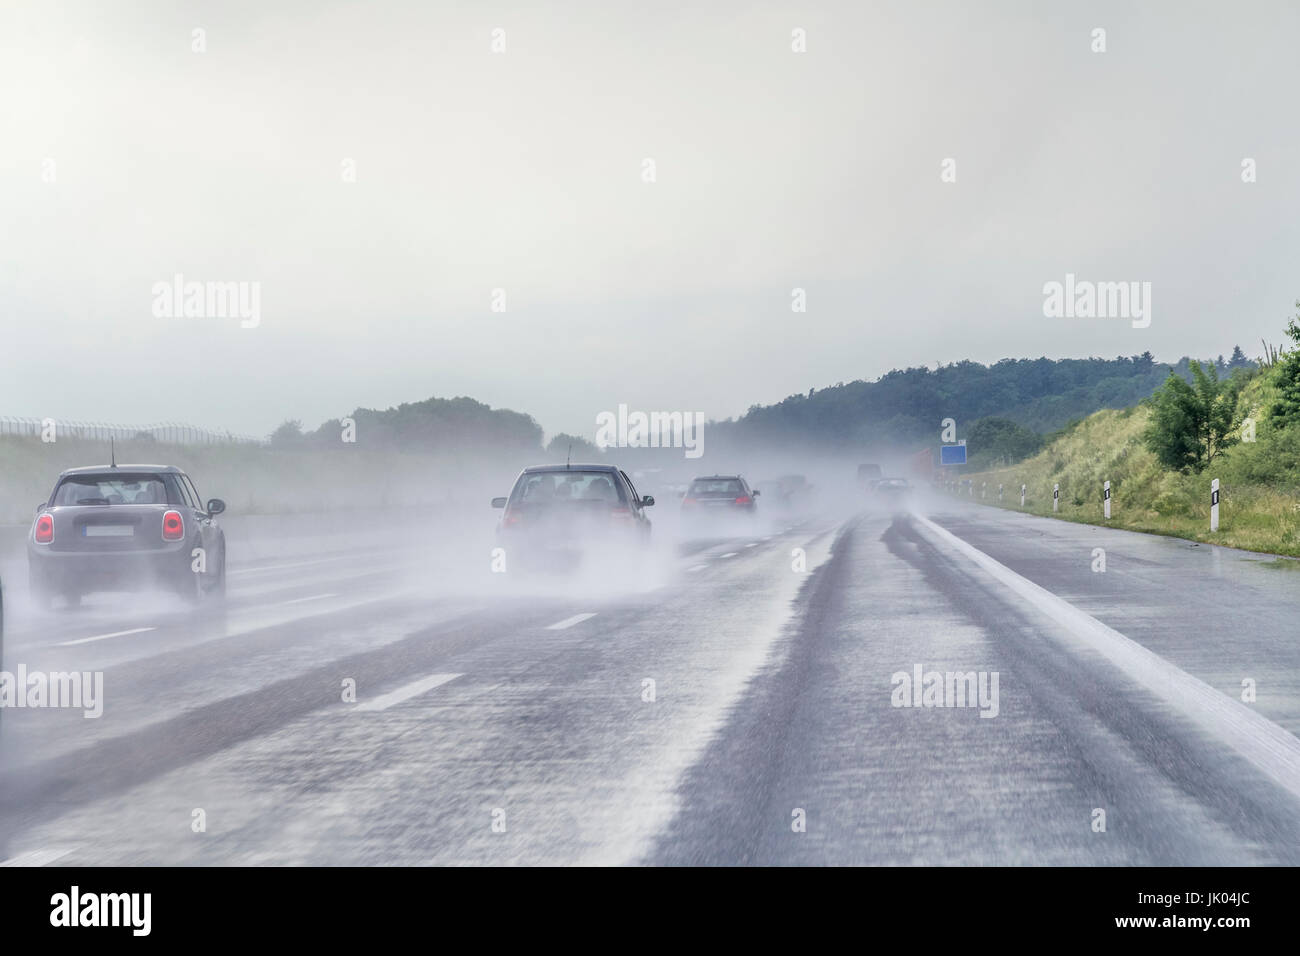 Paisaje de carretera húmeda y lluviosa en una carretera en el sur de Alemania Foto de stock